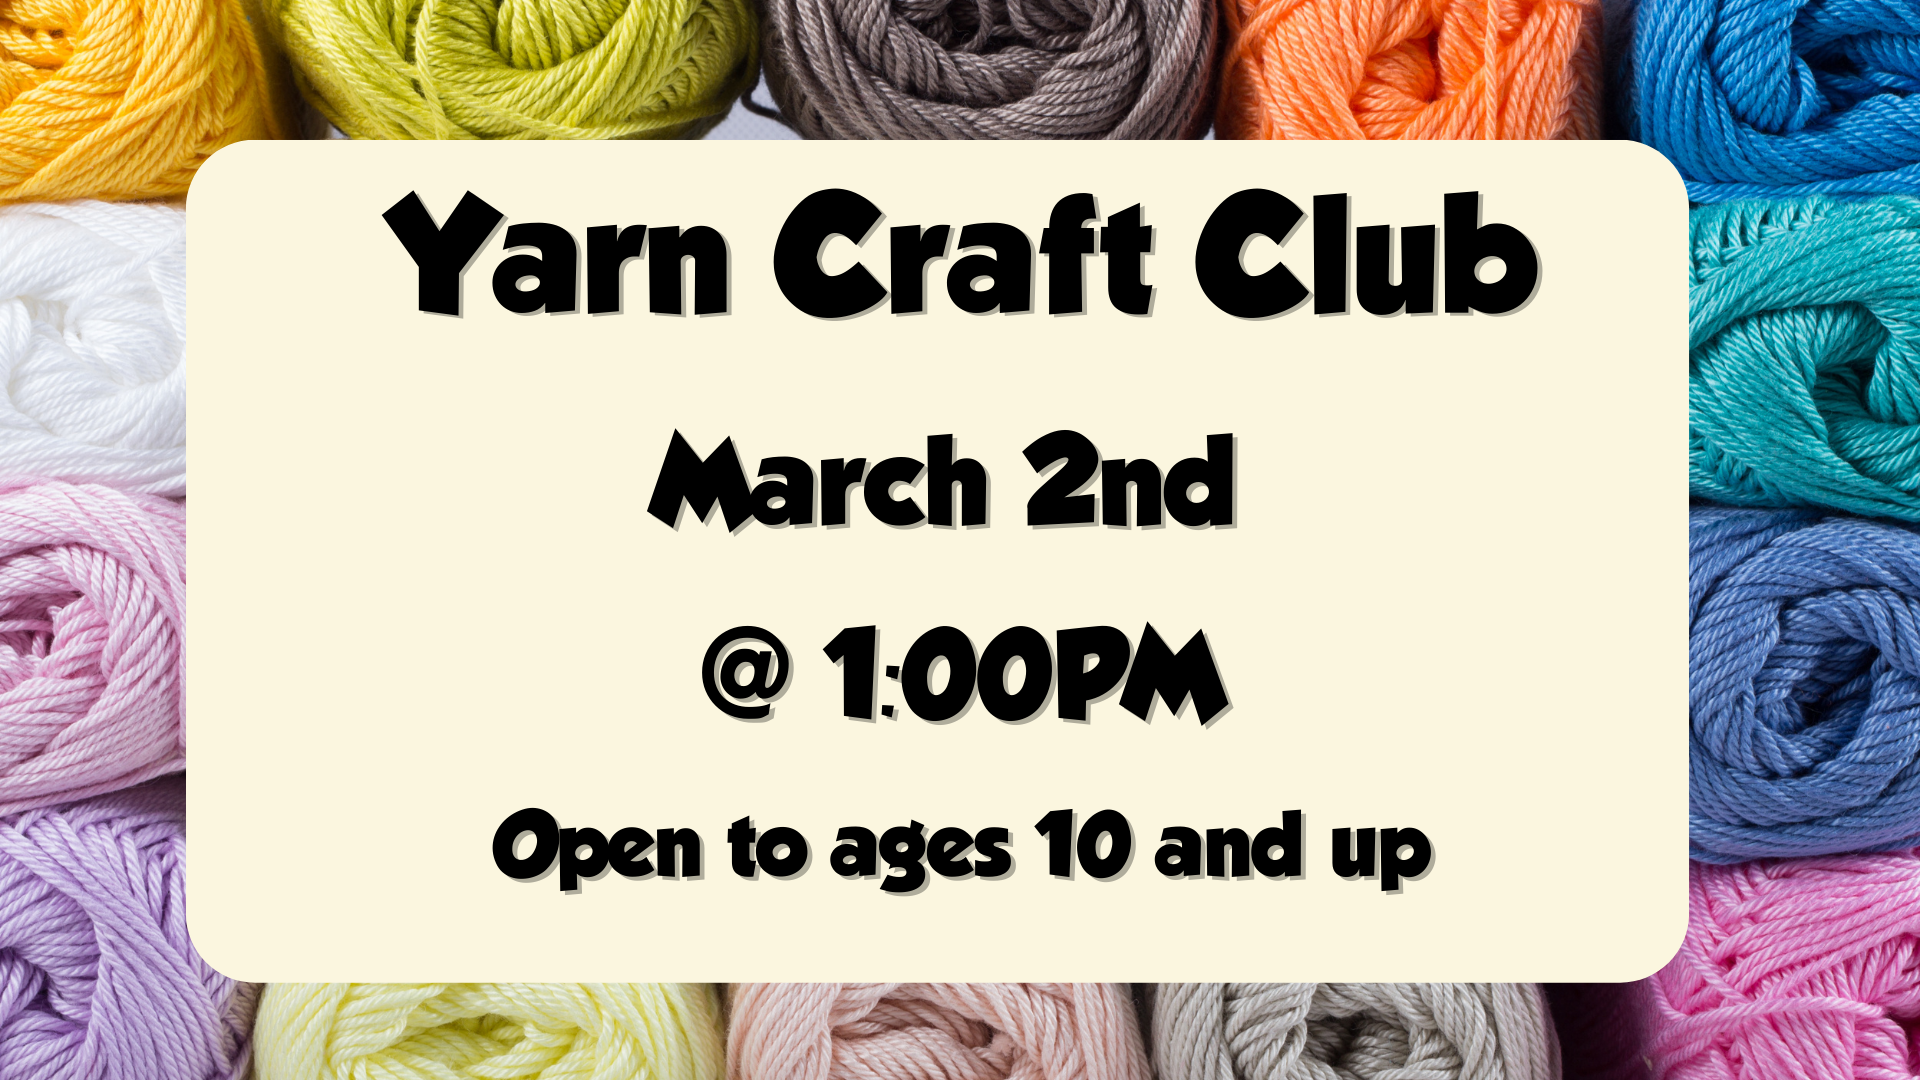 March 2nd Yarn Craft Club at 1:00PM